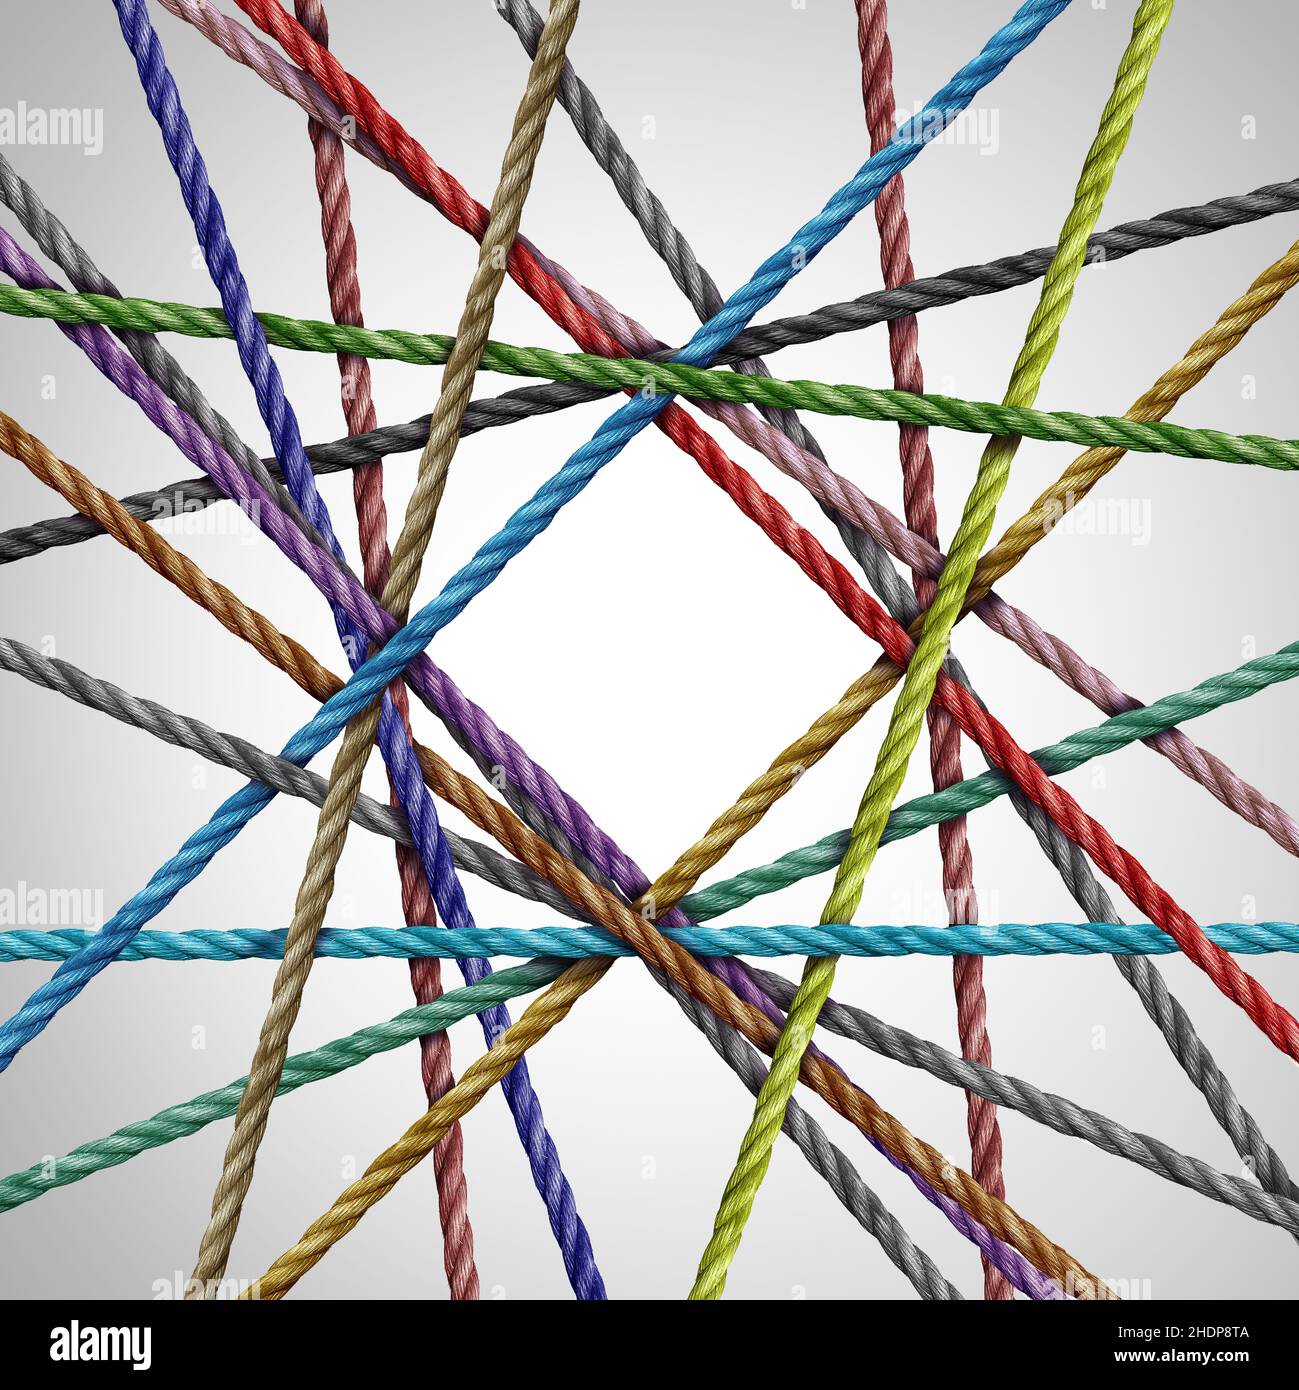 Forma de diamante Grupo de conexión divesisty de cuerdas creando una forma angular centralizada como un concepto de conexión para negocios o redes sociales. Foto de stock